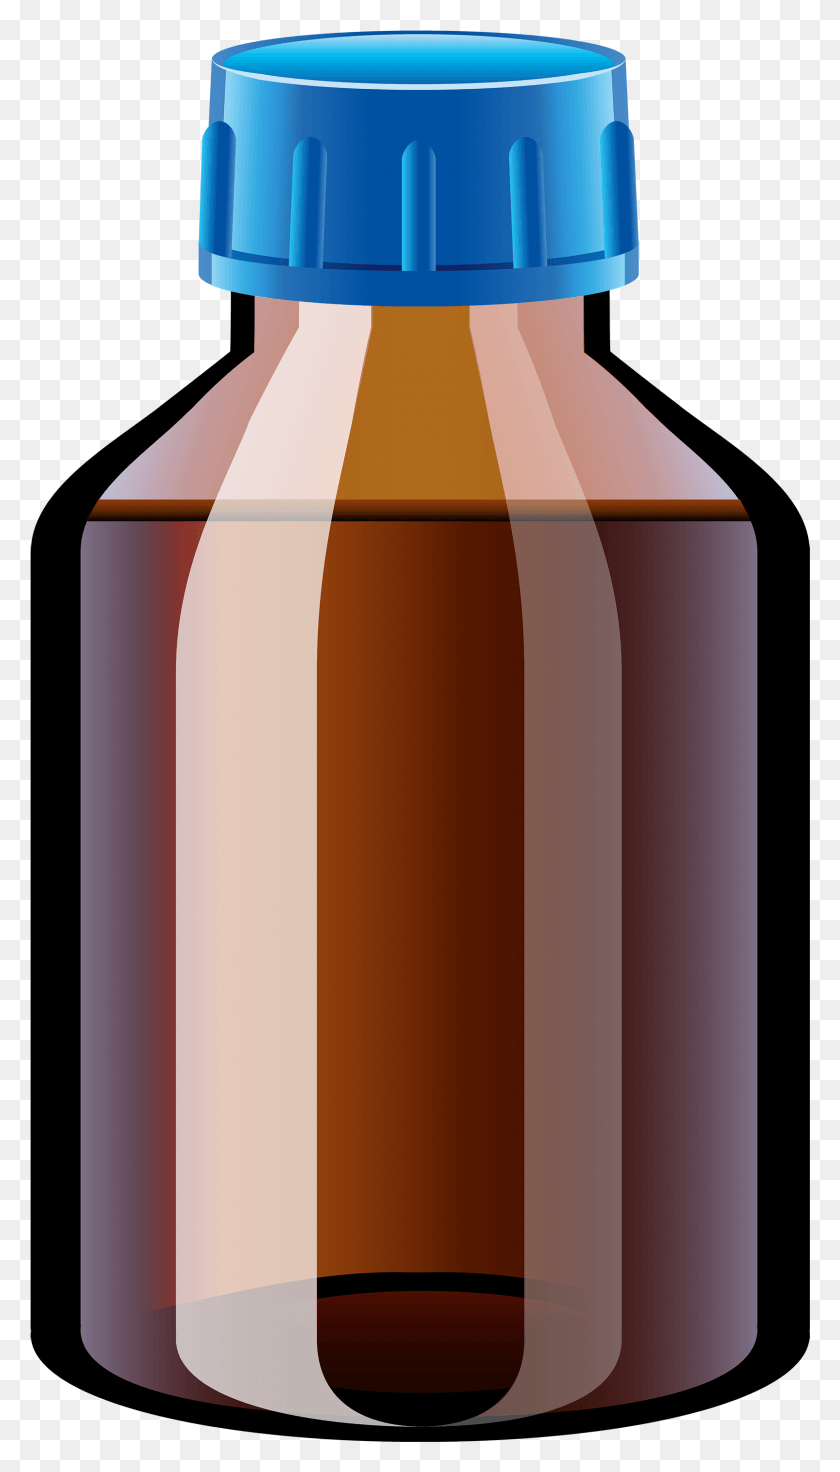 1612x2919 Бутылка С Лекарством, Бутылка С Лекарством, Прозрачный Фон, Лампа, Кетчуп, Еда Hd Png Скачать